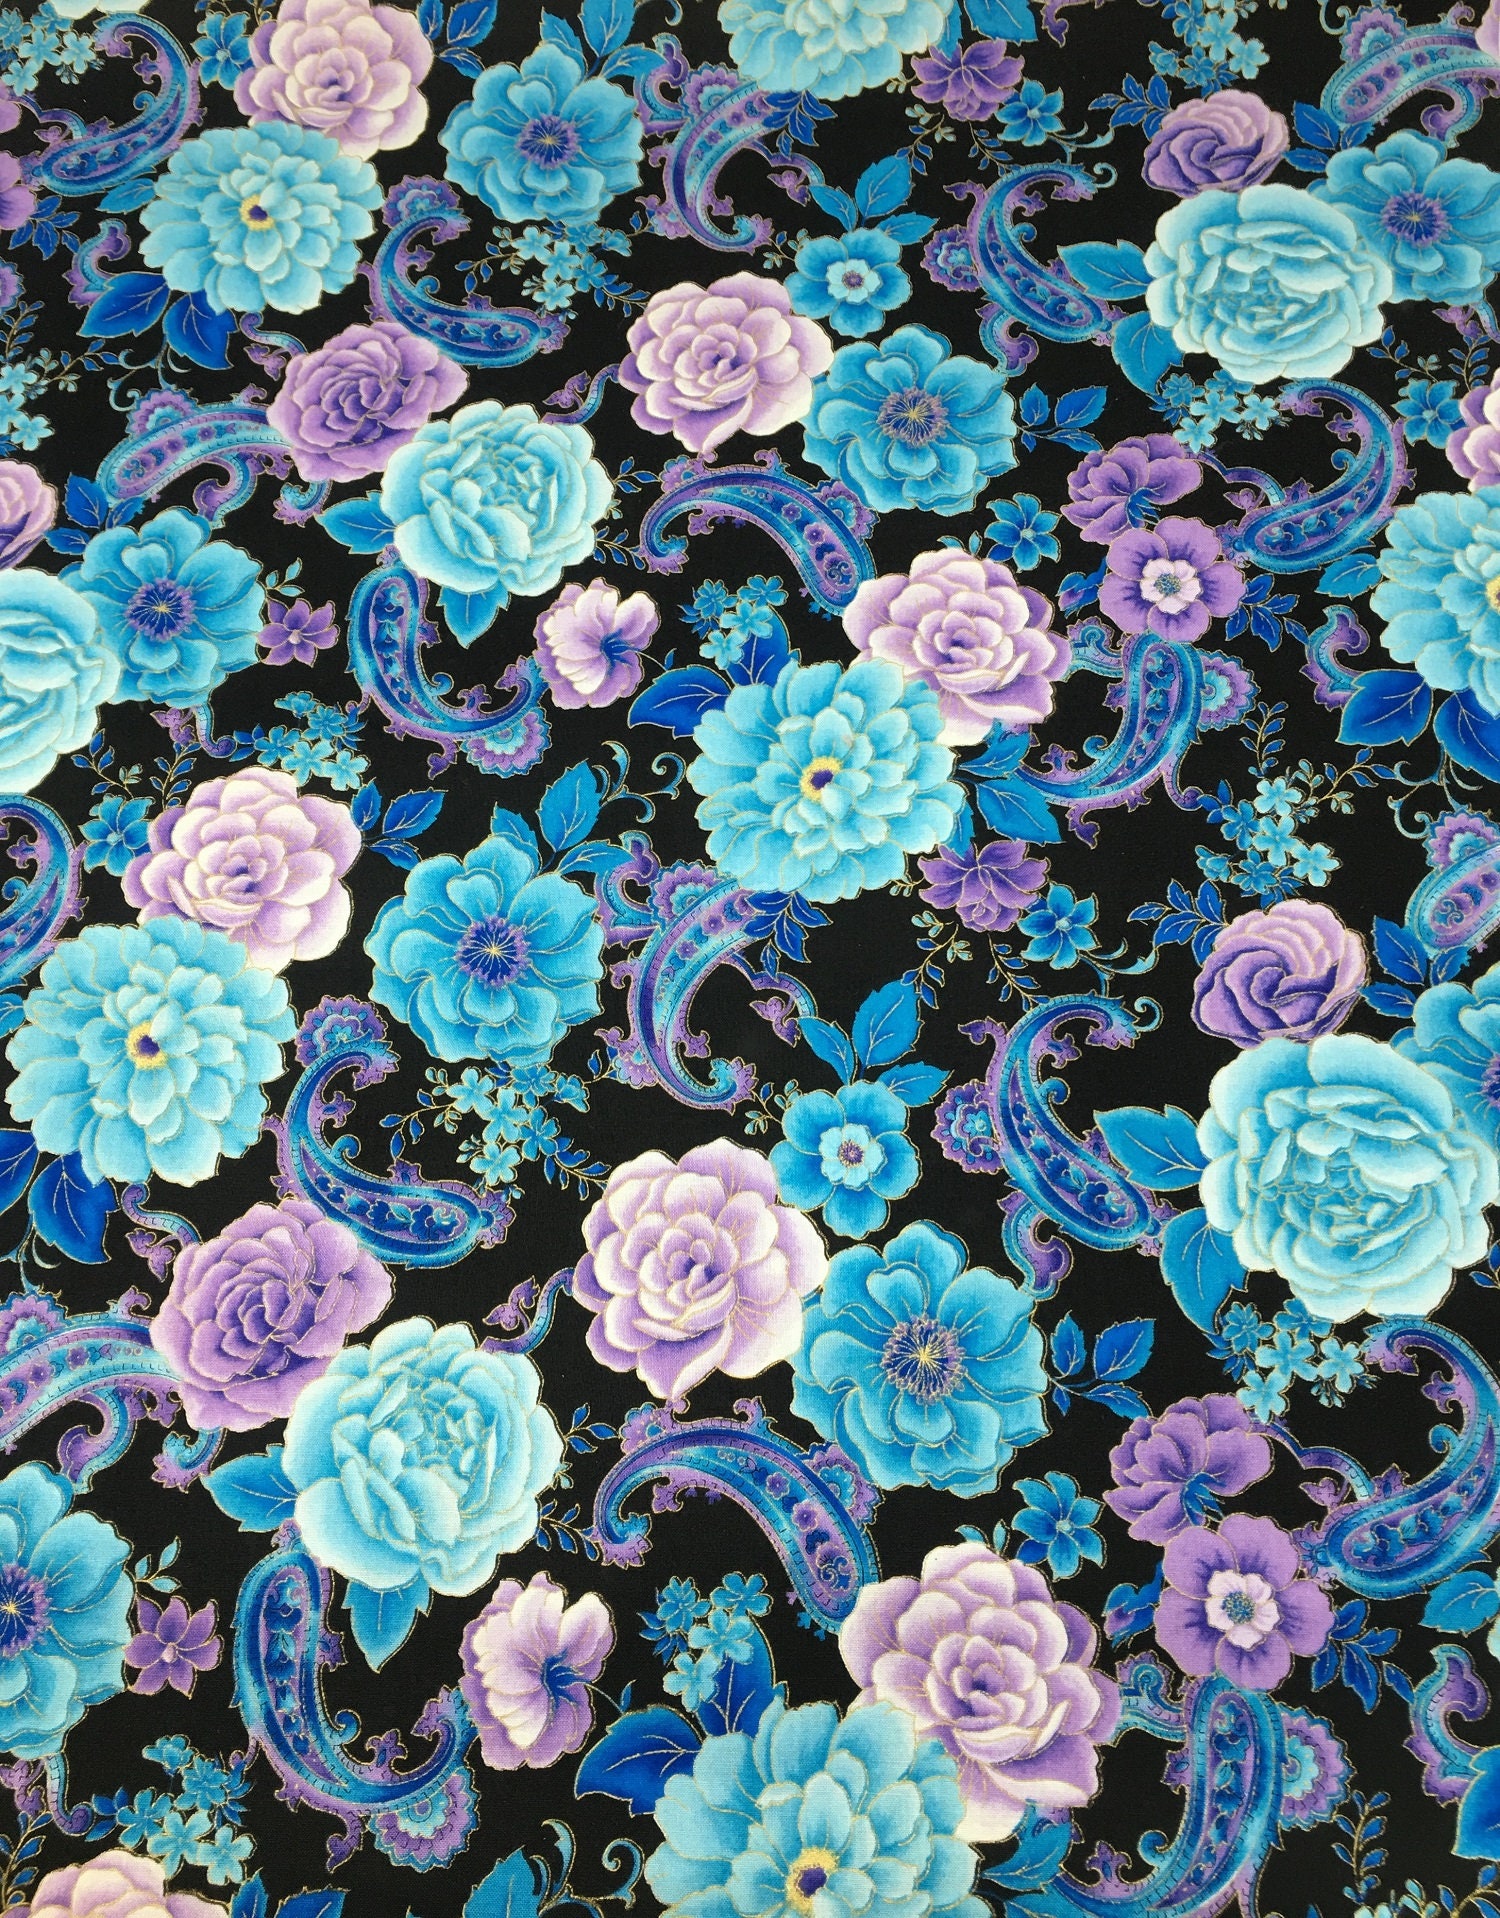 18” x 22” Hi Fashion Batik Purple Floral Cotton Fabric Squares